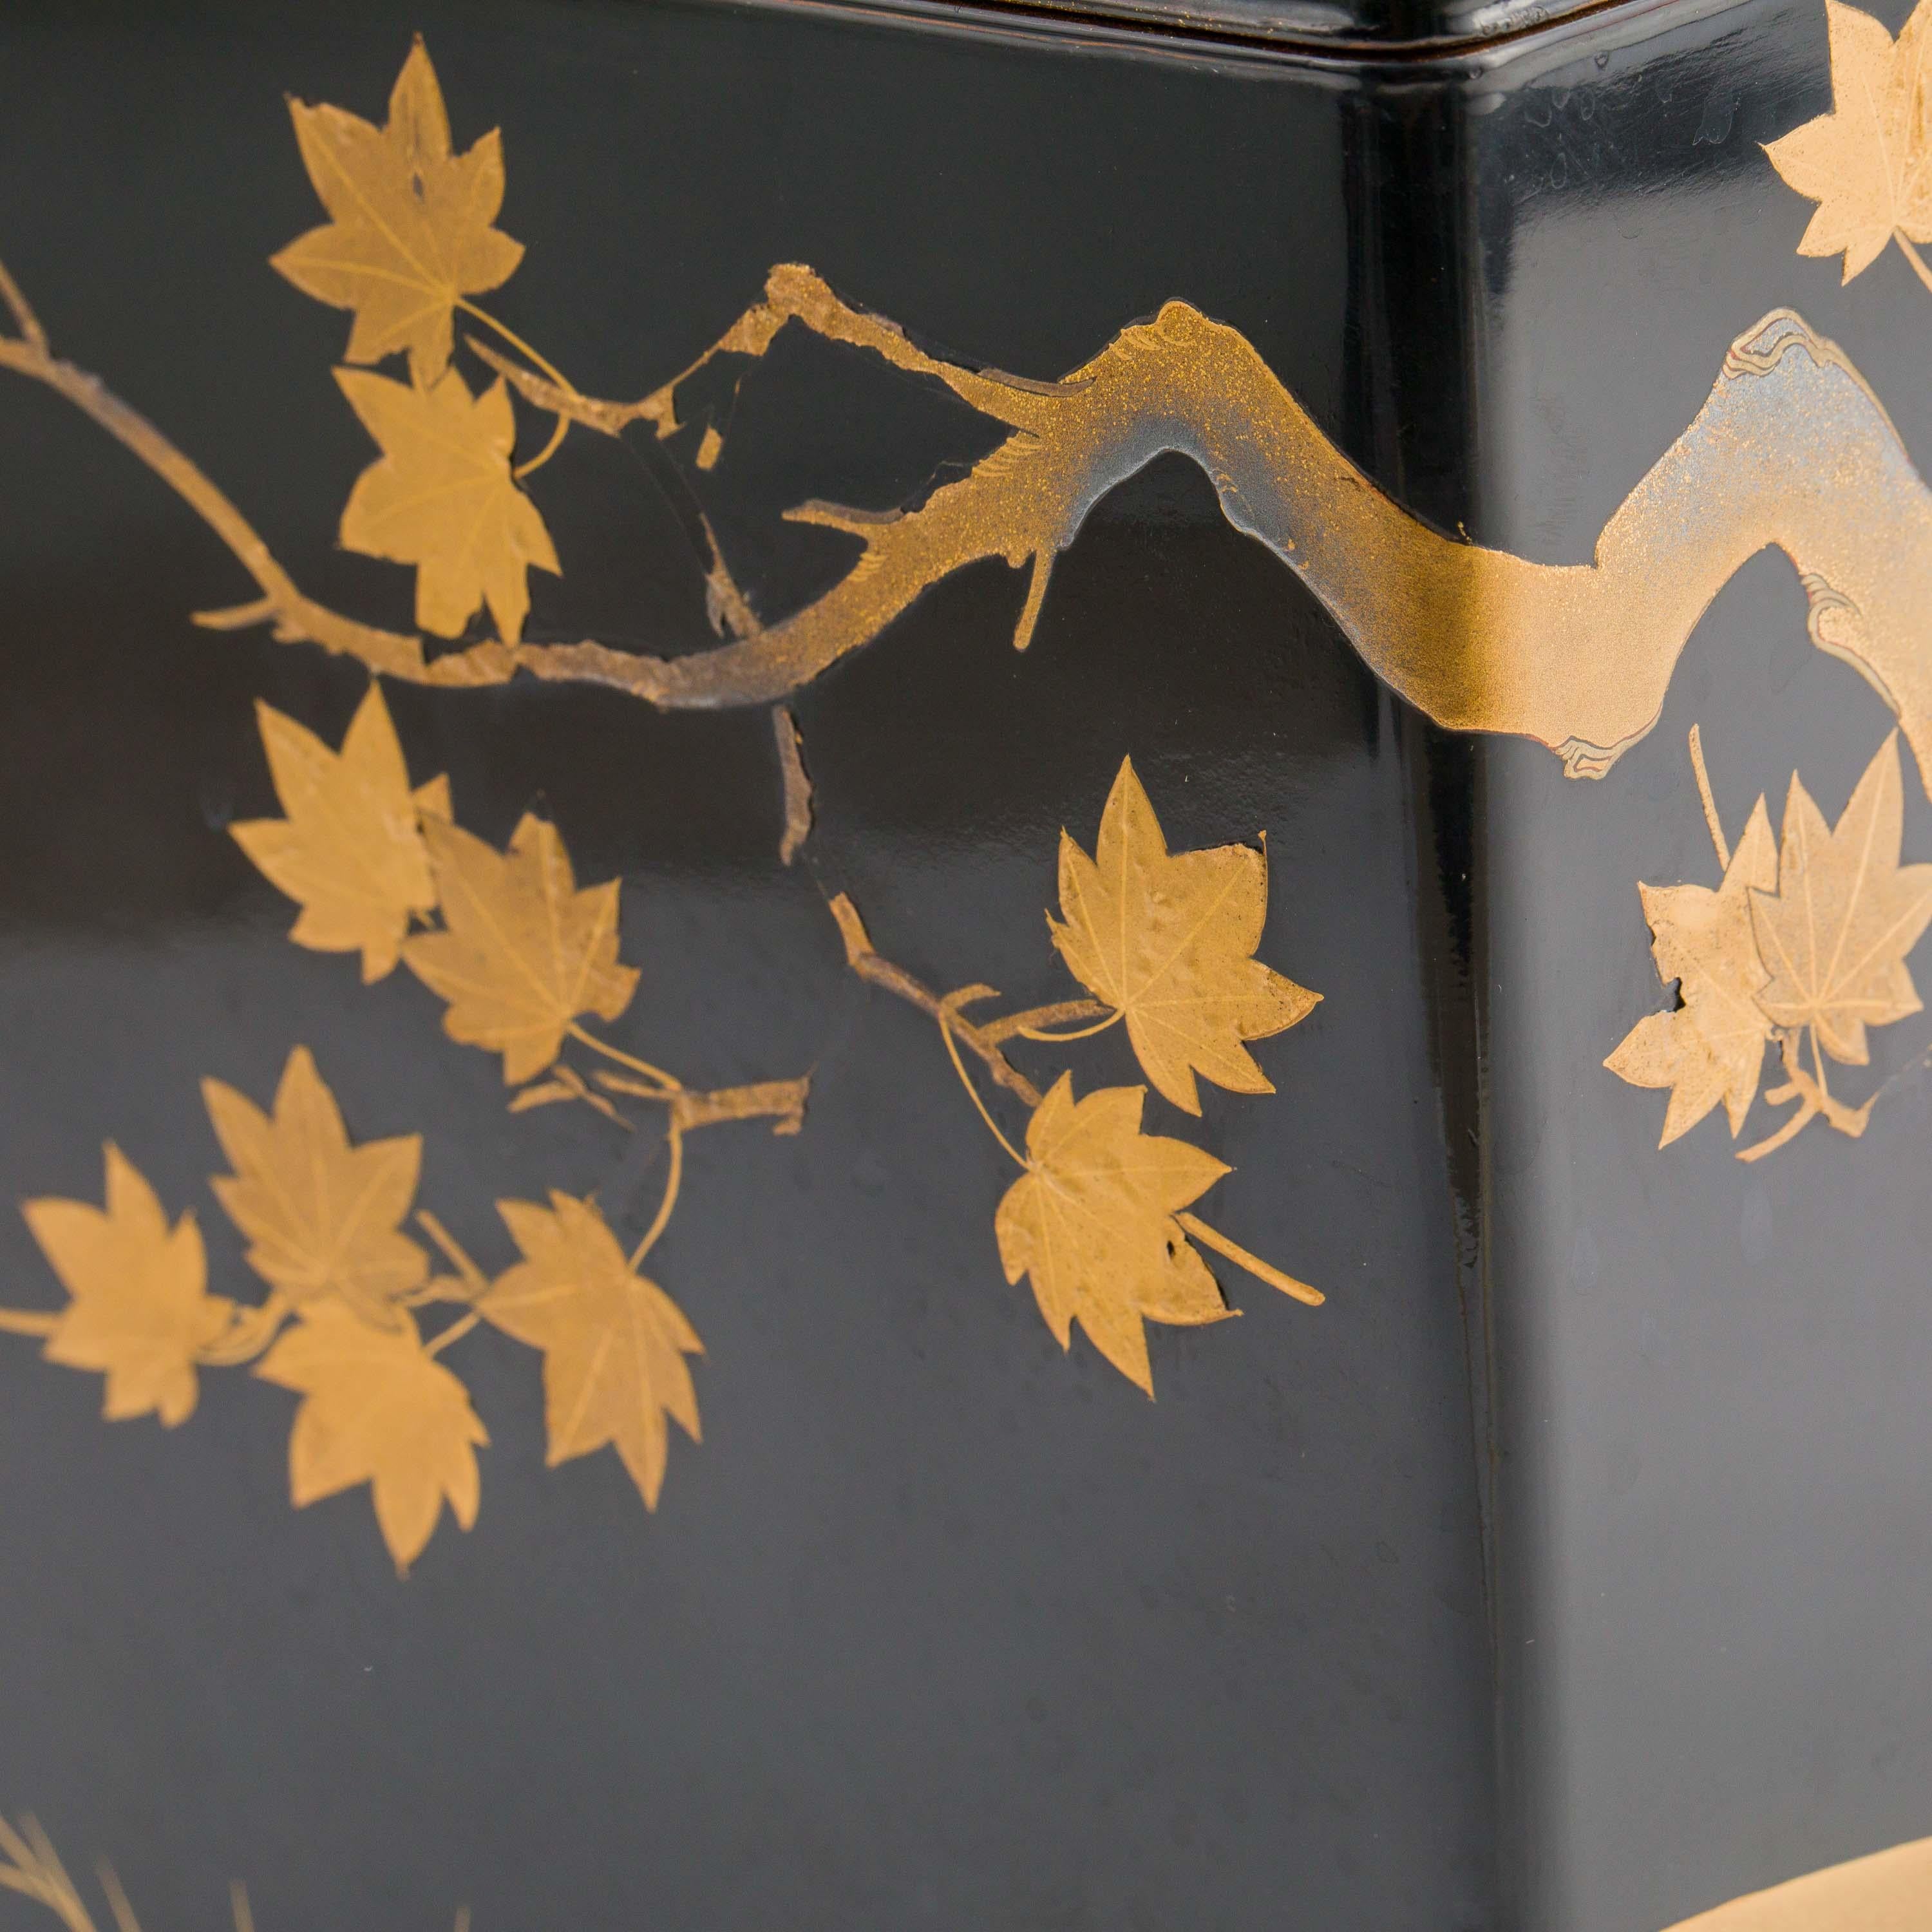 Bronze Antique Japanese Black Lacquer Noh Mask Box with Gold Maki e Design, Edo Period